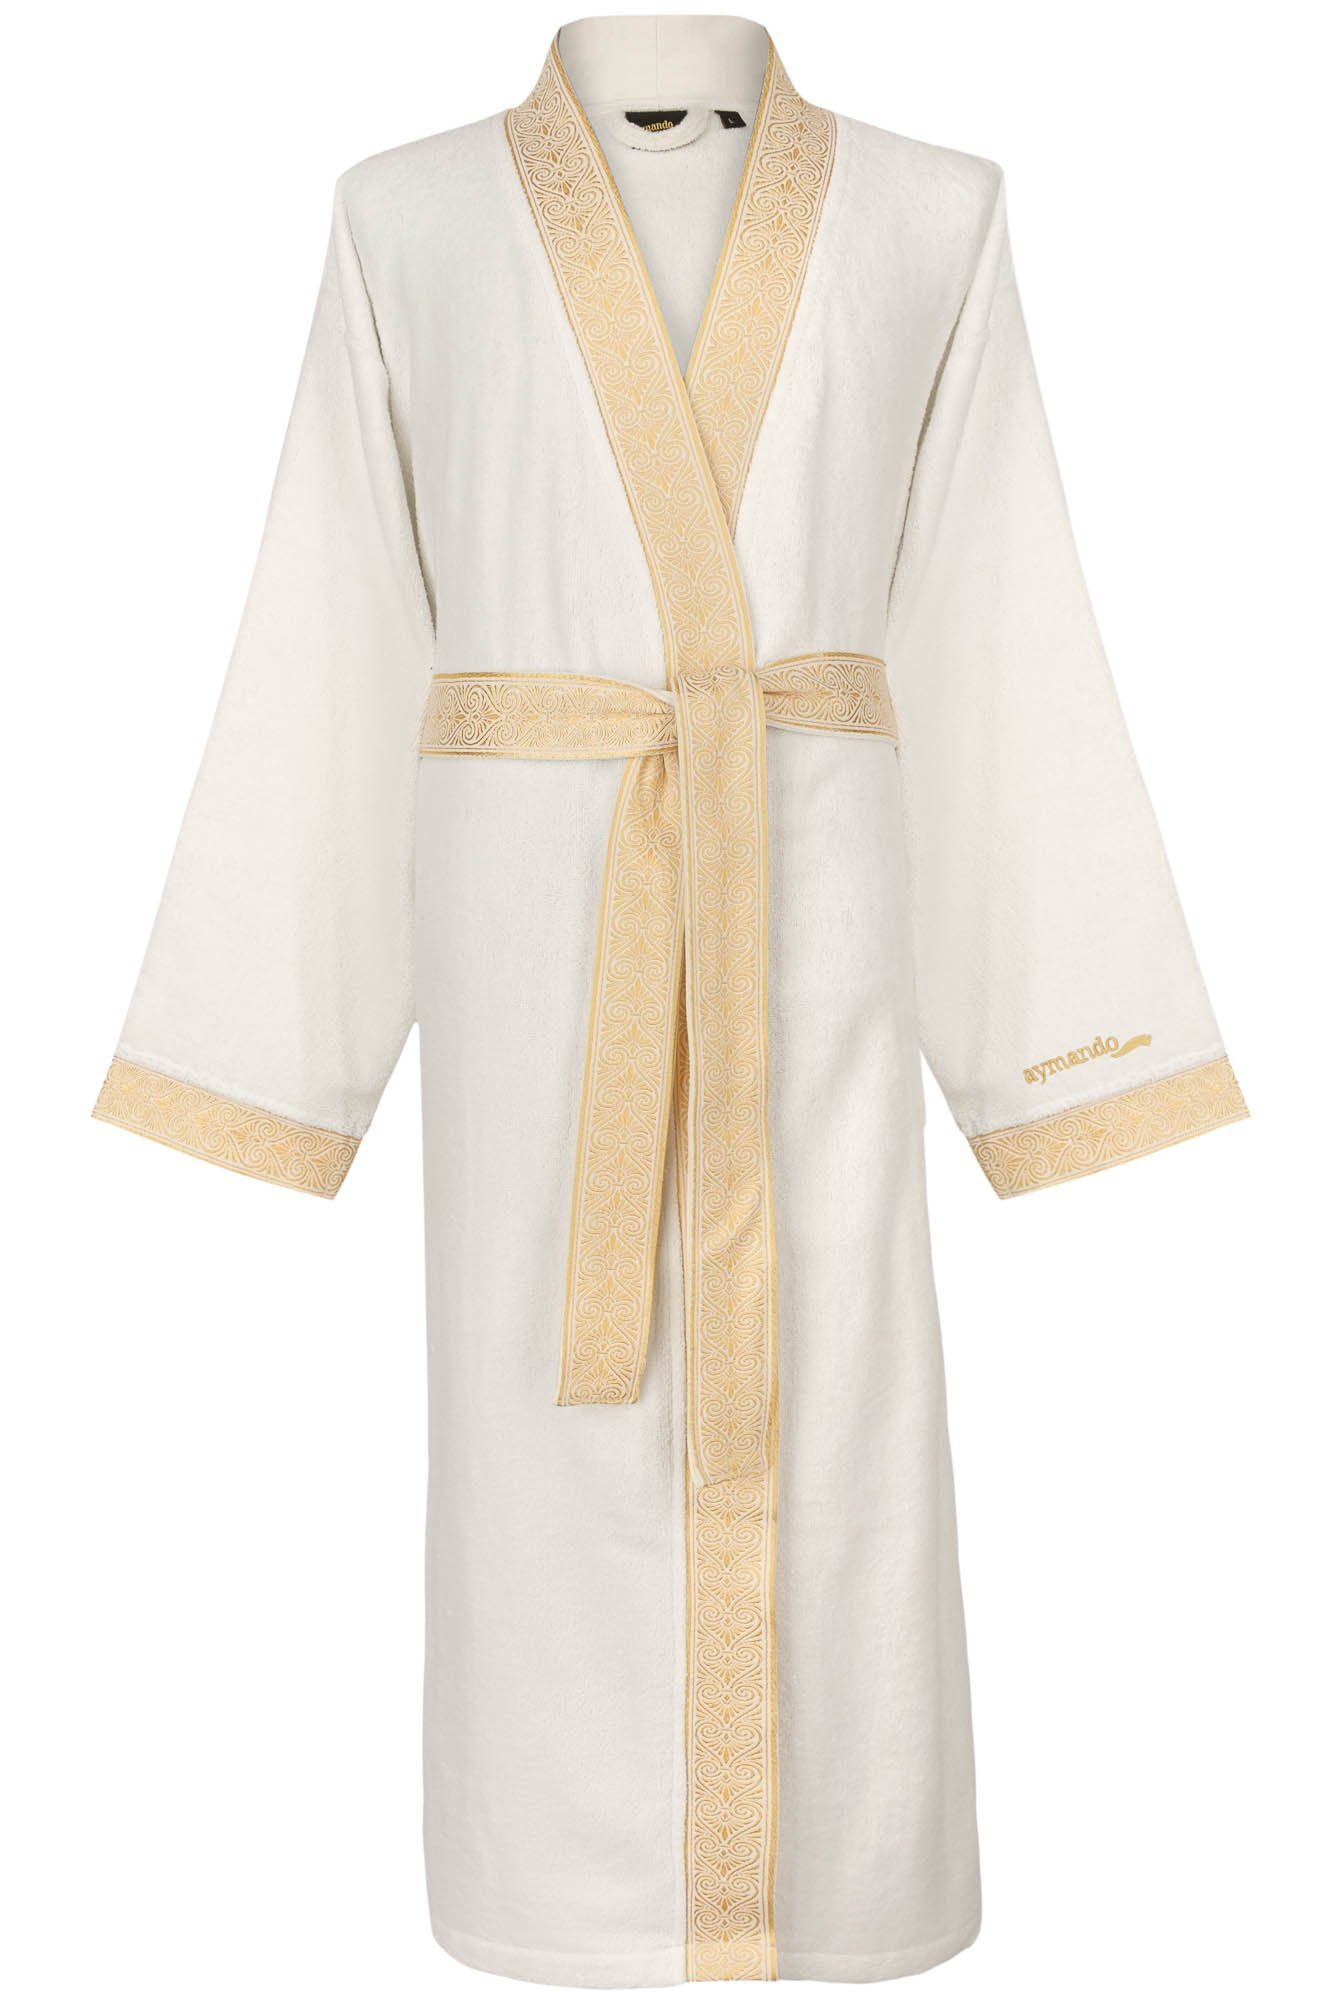 Aymando Bademantel Weiß, M, 100% Baumwolle, Kimono-Kragen, Bindegürtel, Gold gestickte Blende mit Ornament Optik, Geschenkverpackung